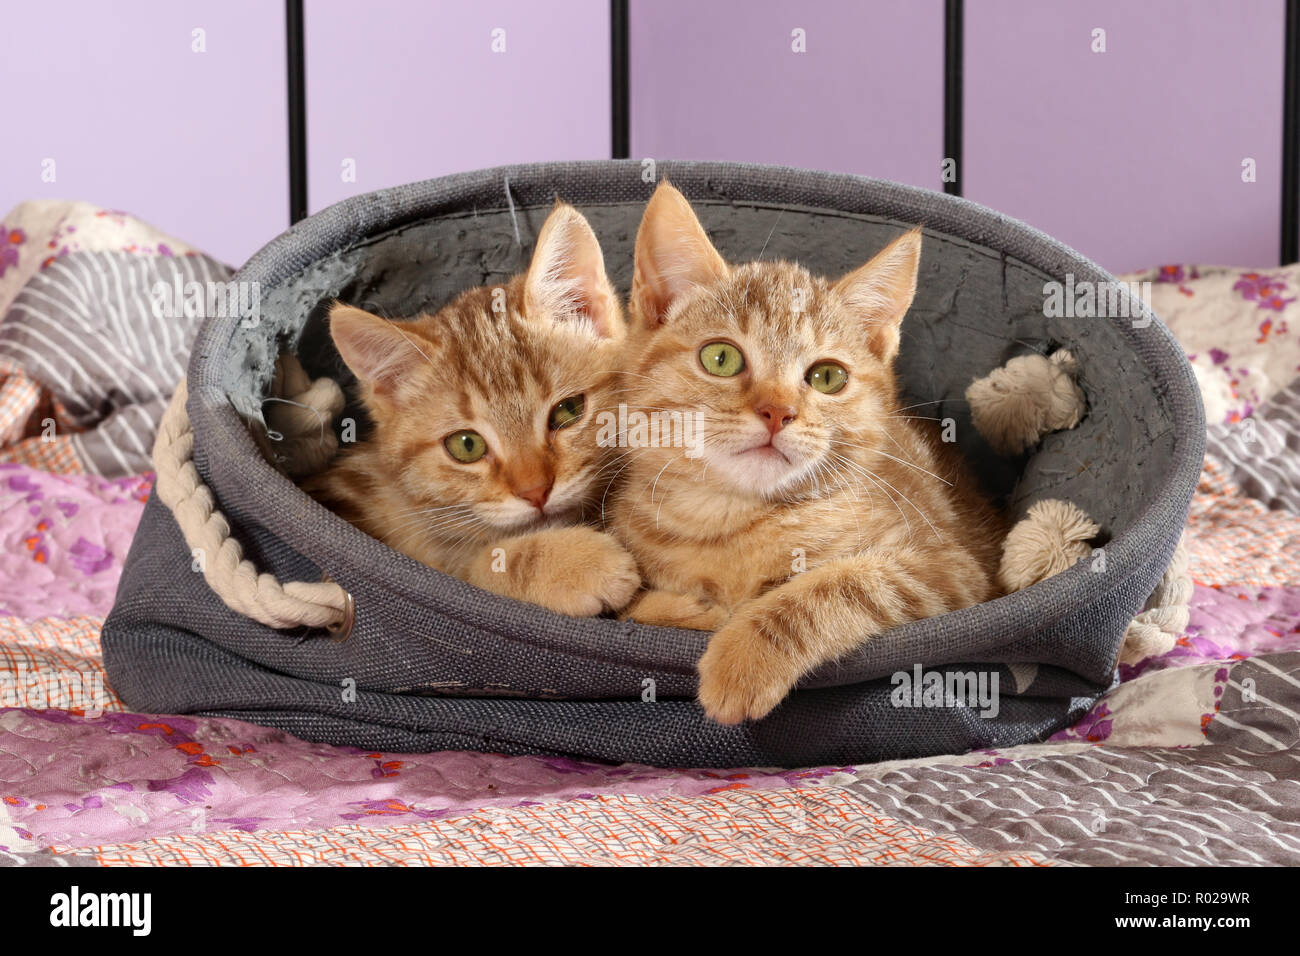 Deux chatons de gingembre, 2 mois, couché dans un panier Banque D'Images